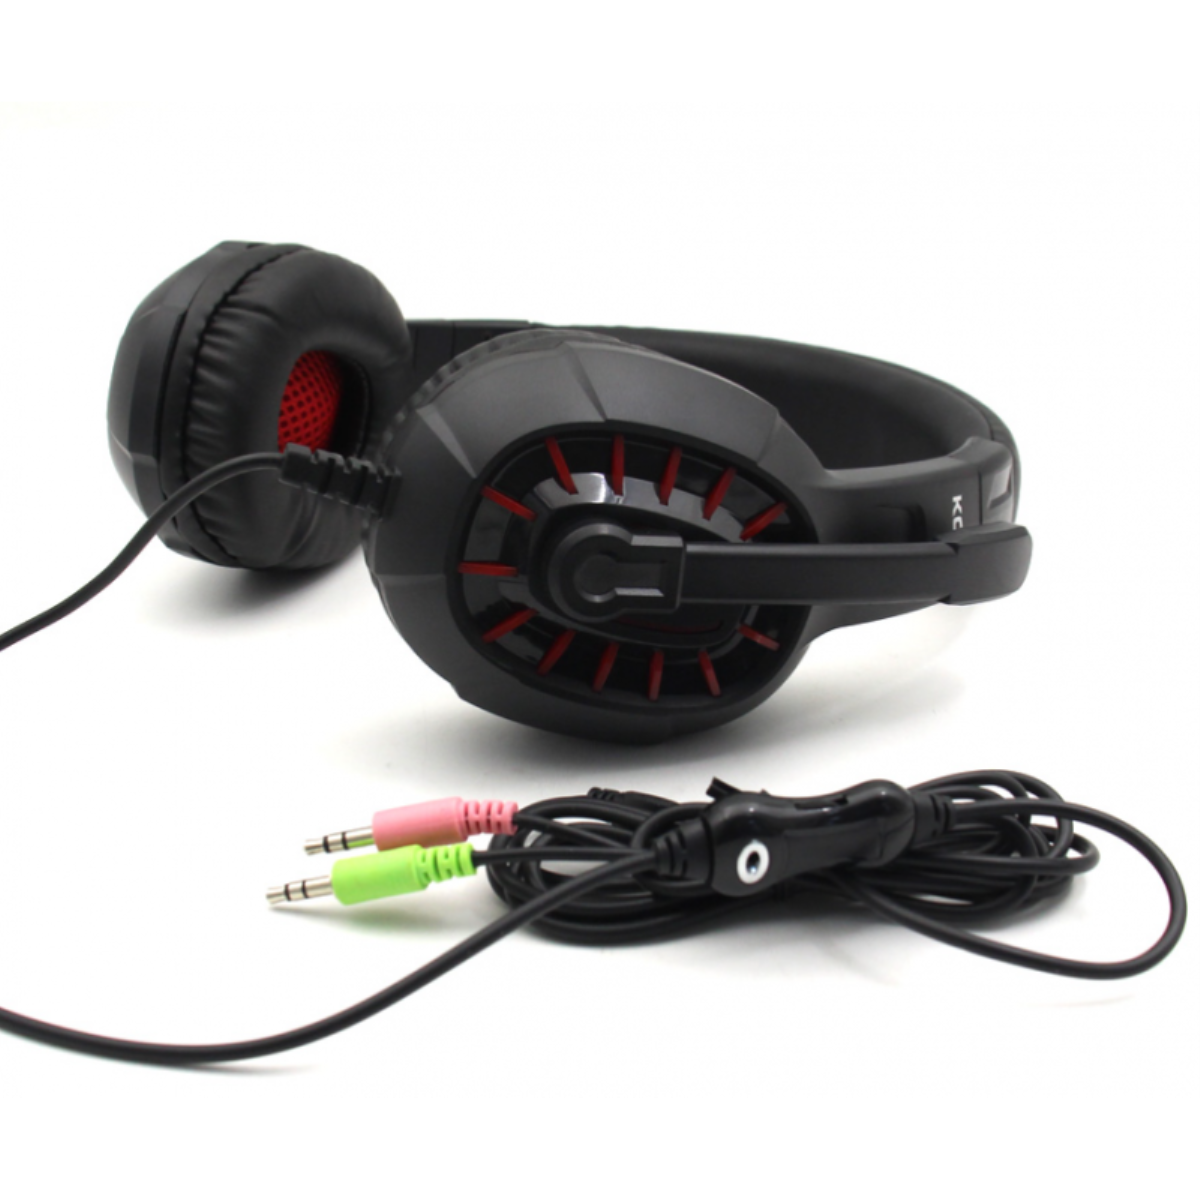 Auriculares Casco Gaming Smartek Estéreo Con Cable Y Micrófono - Rojo  MKP